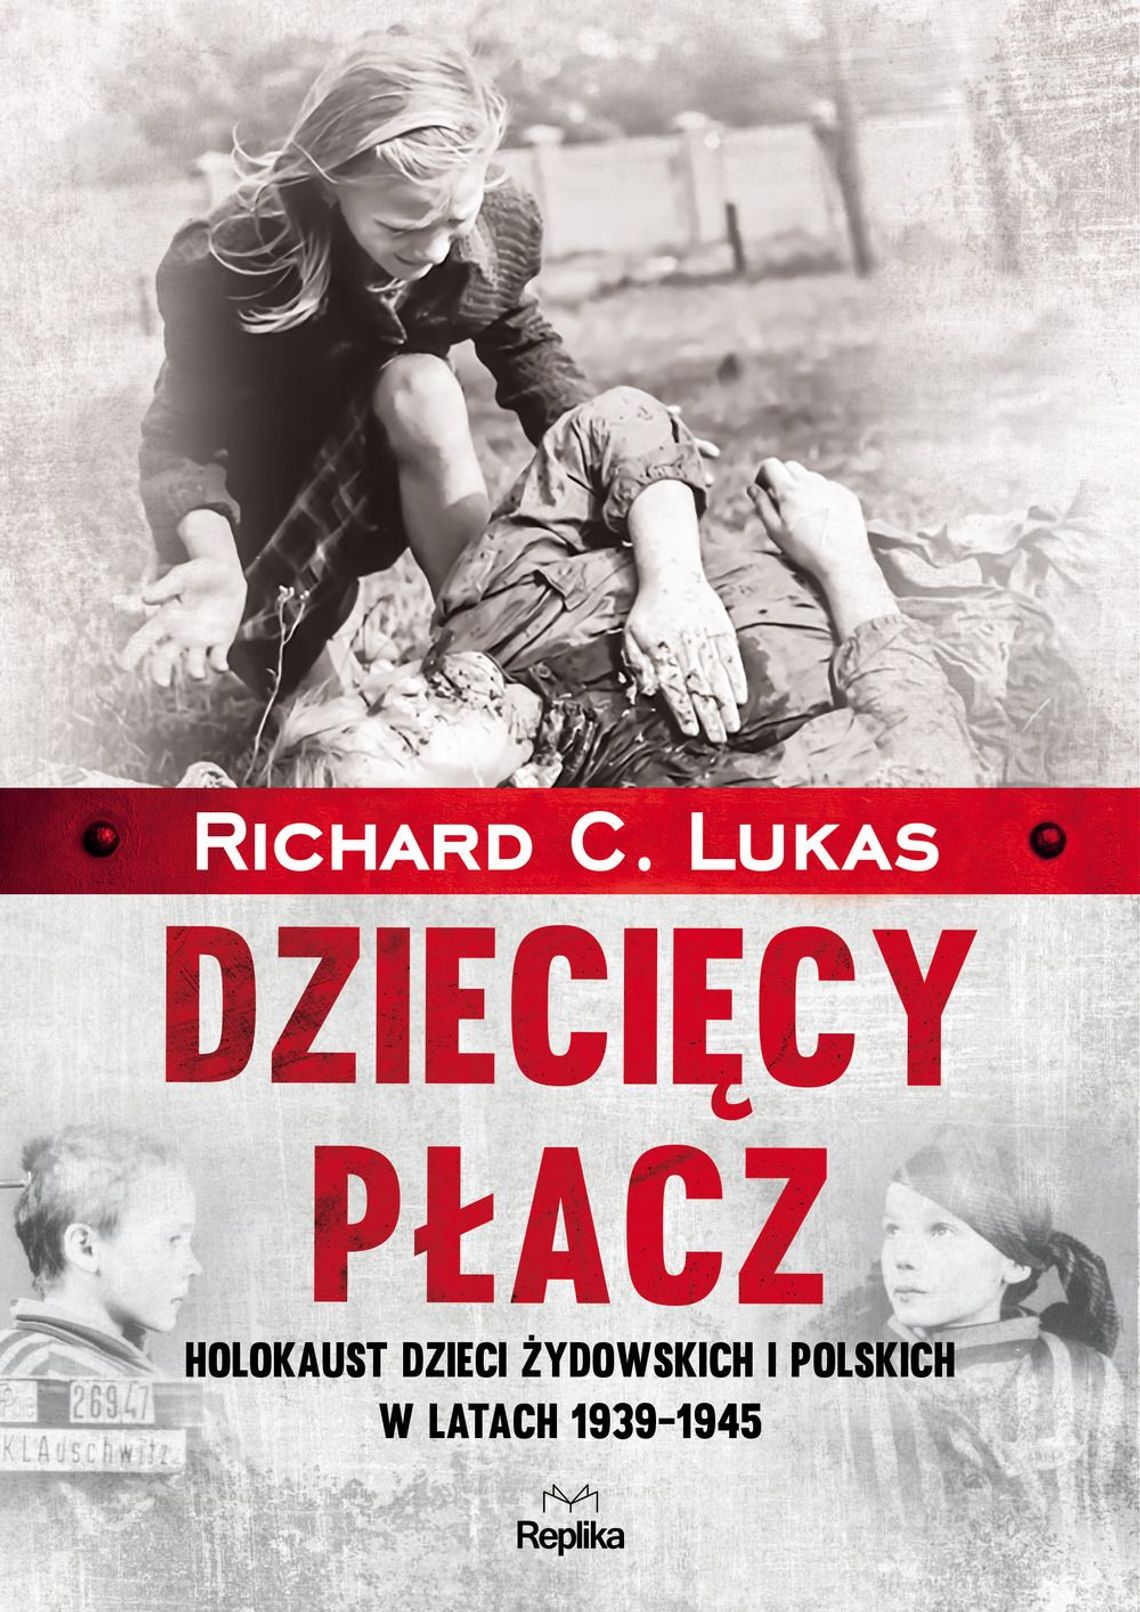 Richard C. Lukas - Dziecięcy płacz. Holokaust dzieci żydowskich i polskich w latach 1939-1945; wyd. Replika